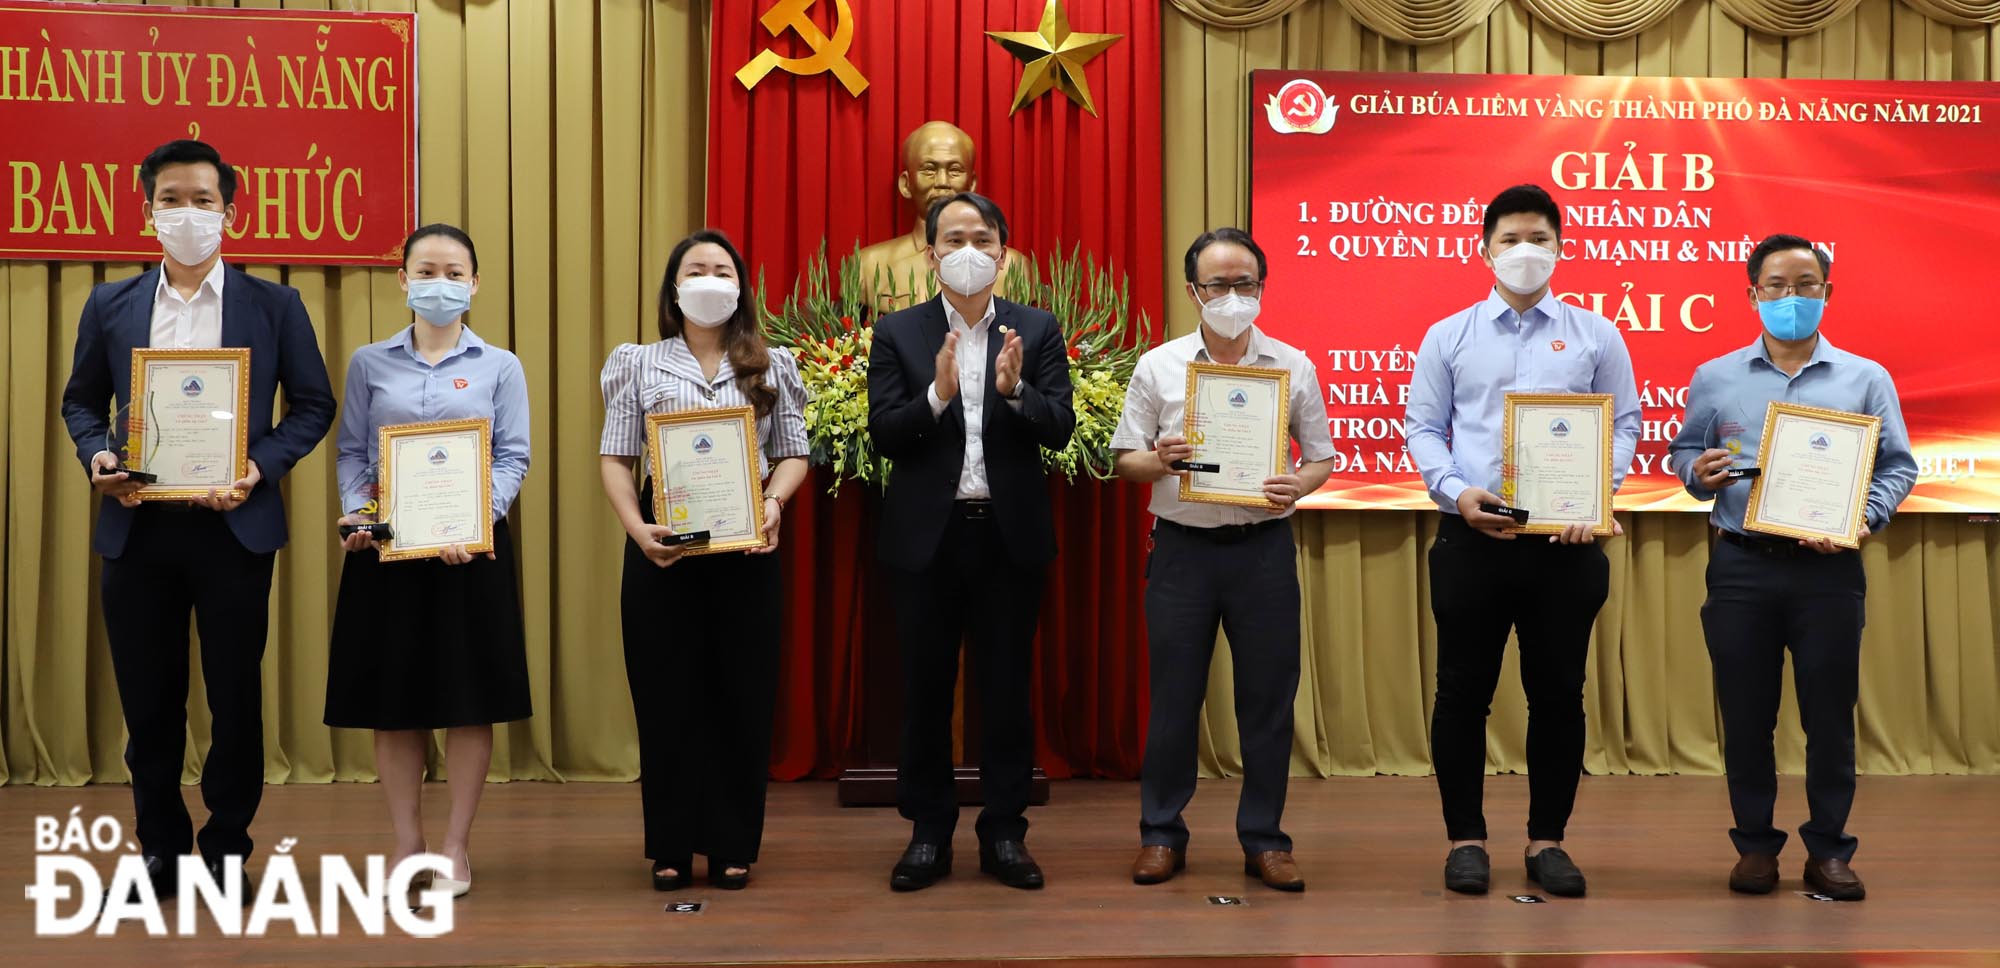 Trưởng ban Tổ chức Thành ủy Nguyễn Đình Vĩnh trao giải B và giải C cho các tác giả, nhóm tác giả đoạt giải. Ảnh X.D